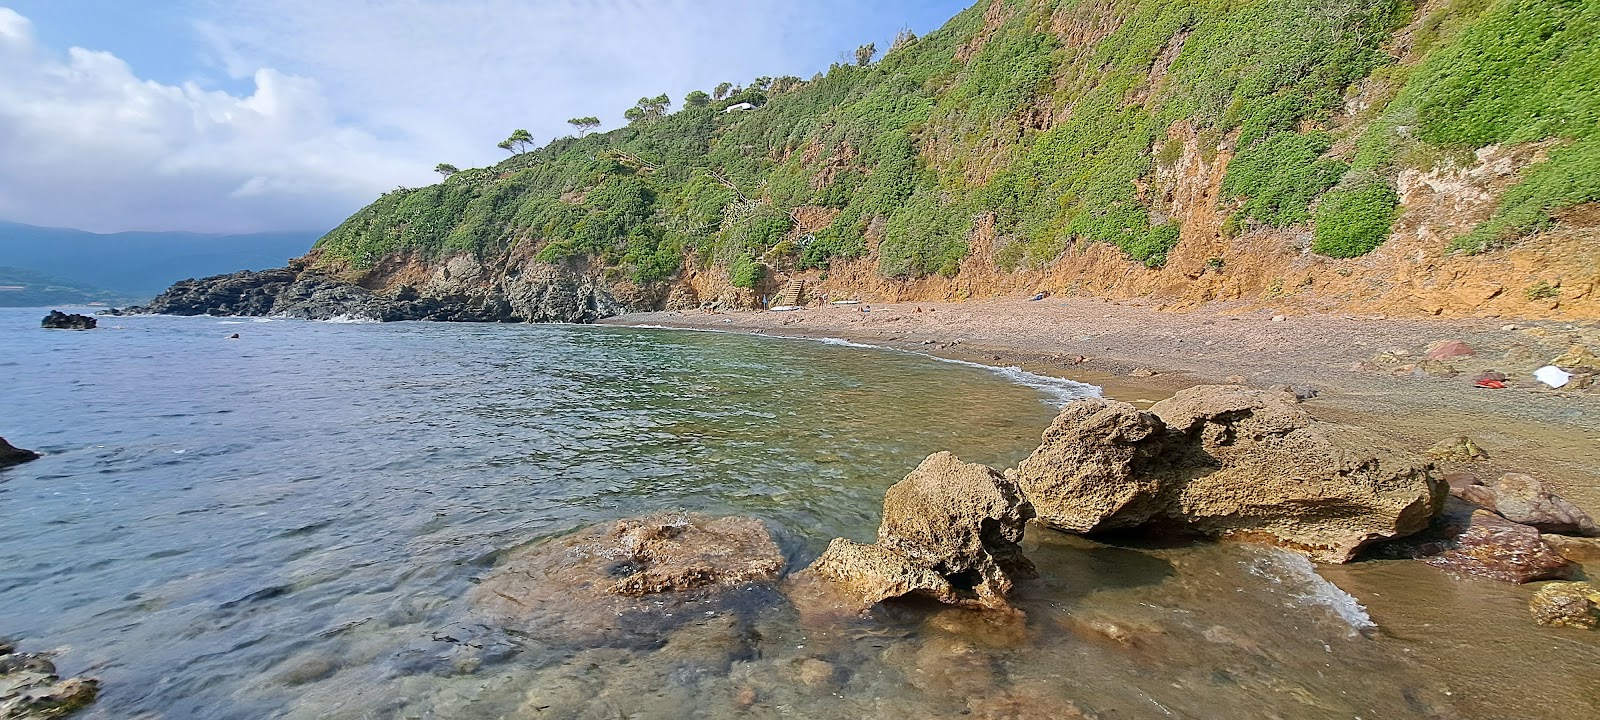 Foto van Spiaggia Canata gelegen in een natuurlijk gebied